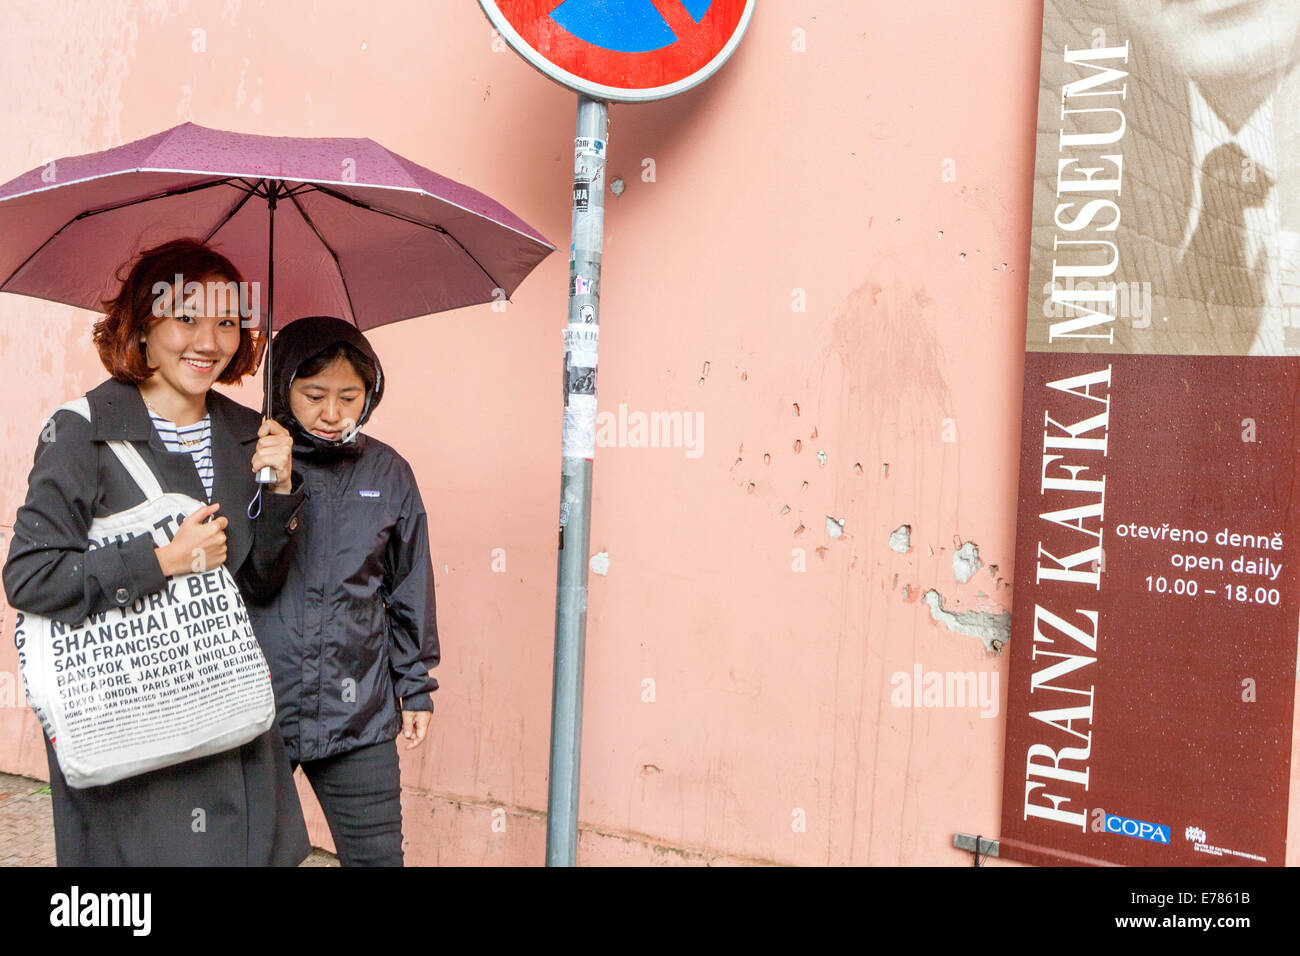 Asiatische Touristen, die durch die Straße auf Kampa um Werbung im Franz Kafka Museum in Prag Tschechien Europa gehen junge asiatische Frauen auf der Straße Stockfoto